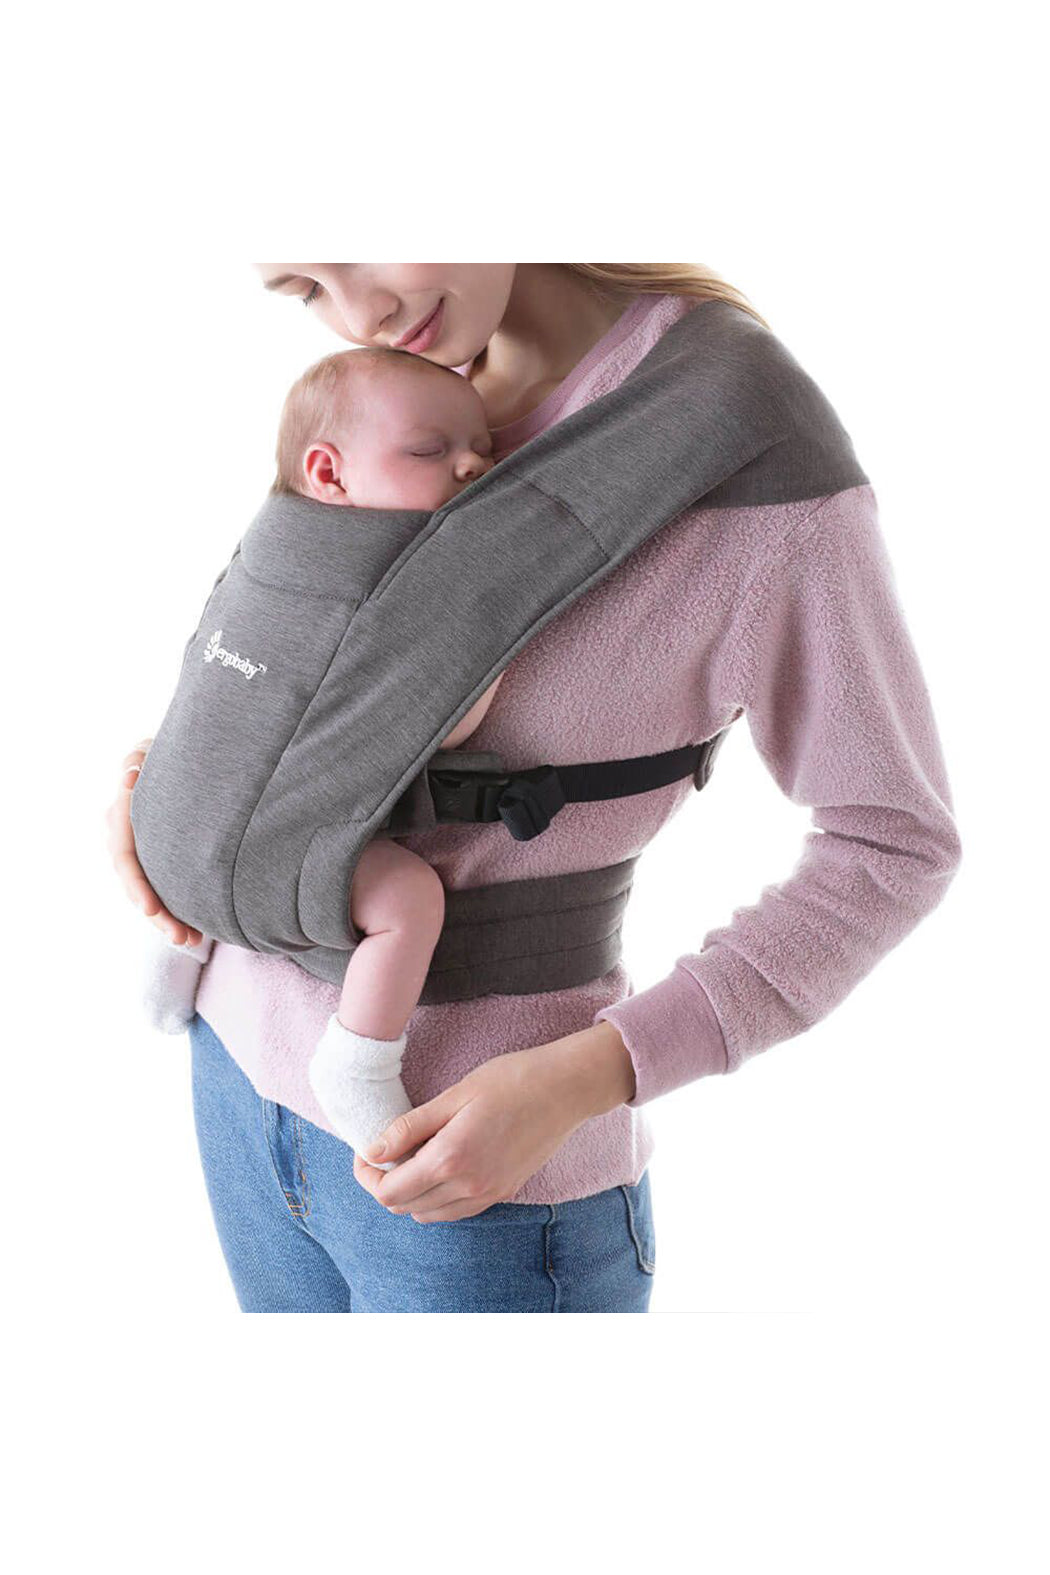 ERGObaby Embrace Cozy Newborn Carrier - Heather Grey